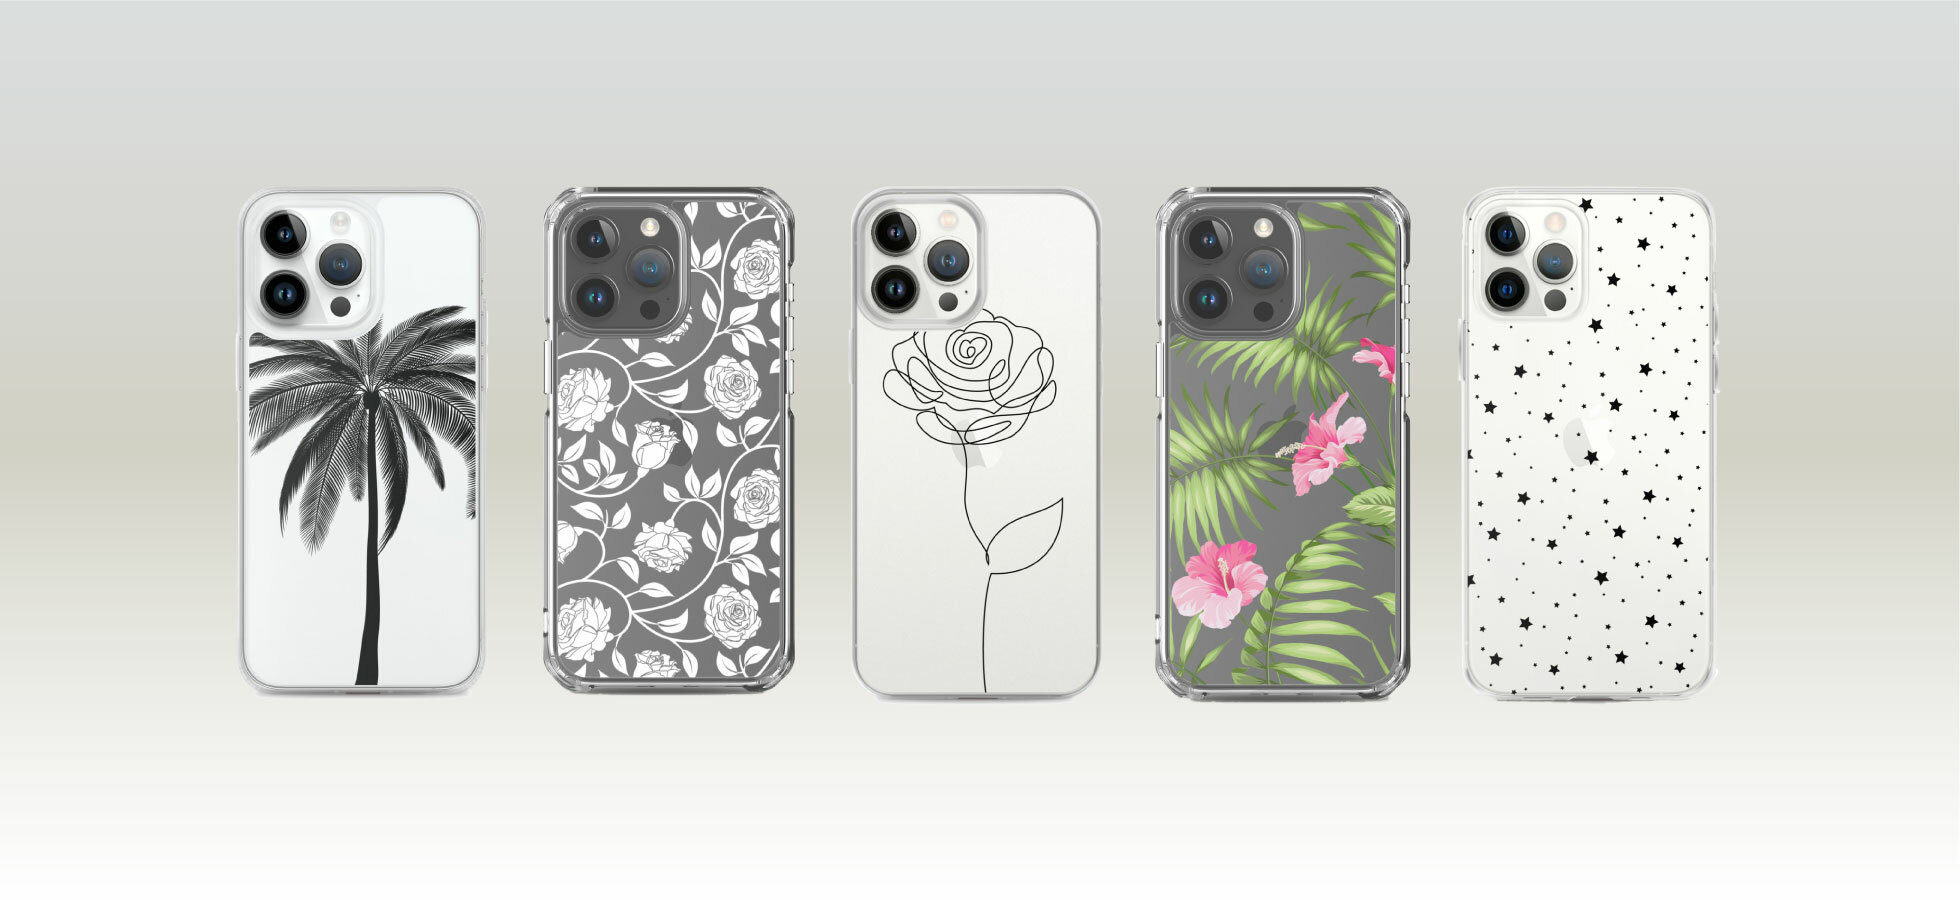 Transparent iPhone Case Designs